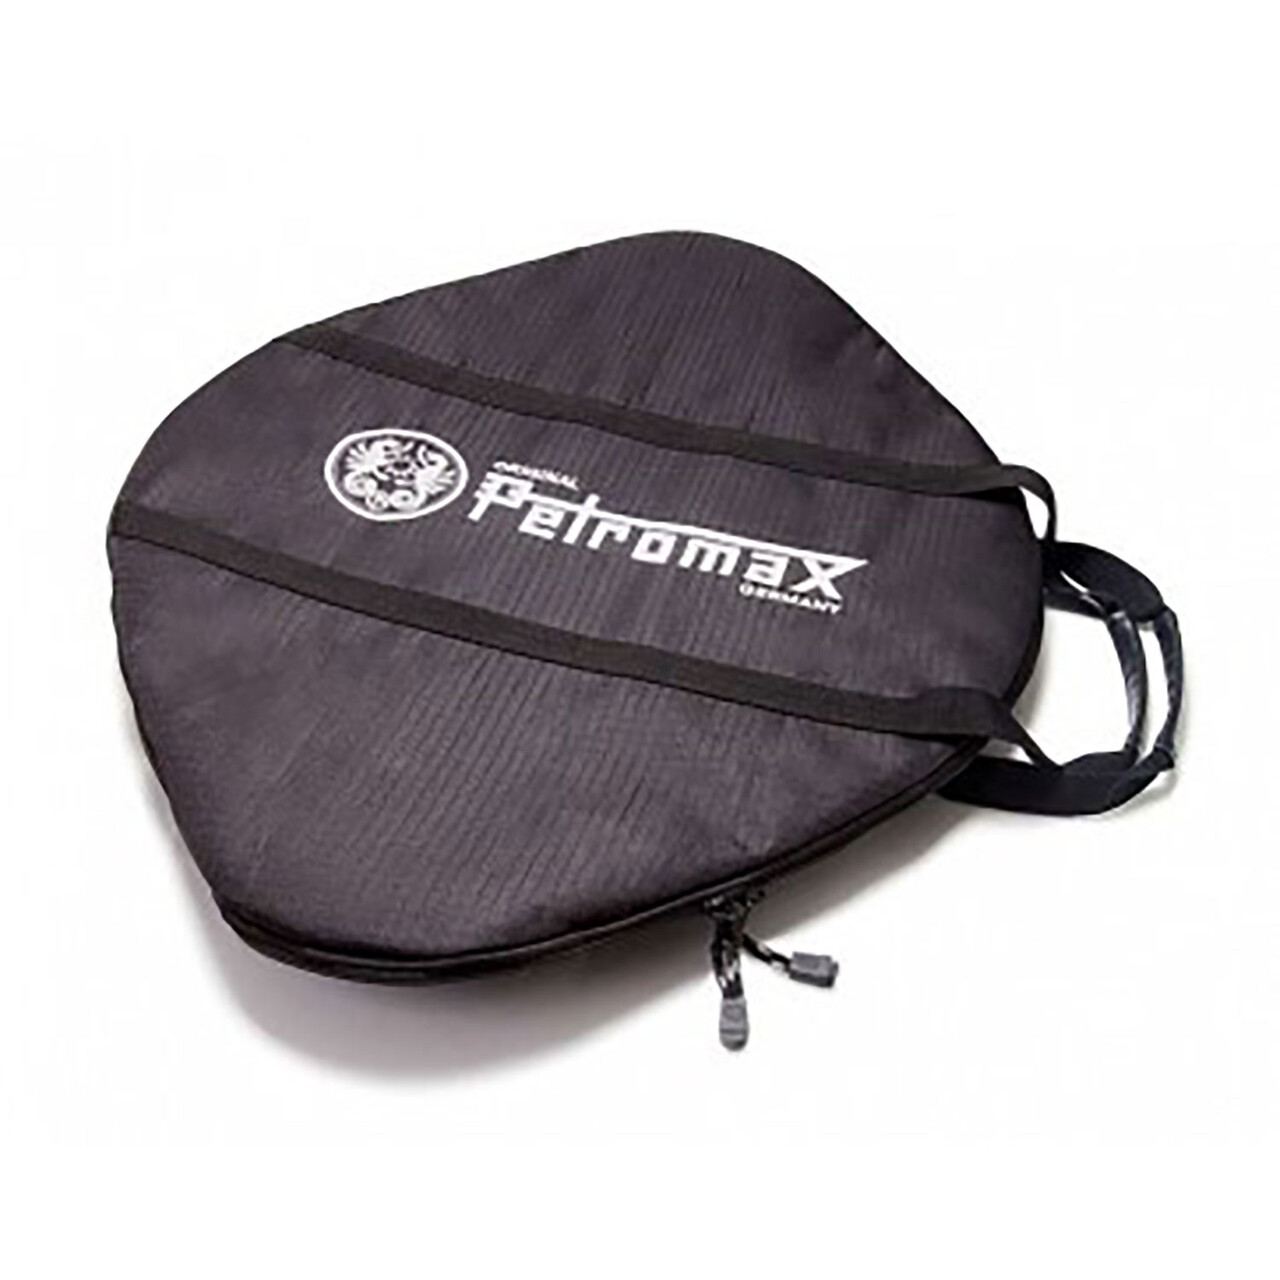 Se Petromax Transport Bag for Griddle and Fire Bowl fs48 hos Friluftsland.dk